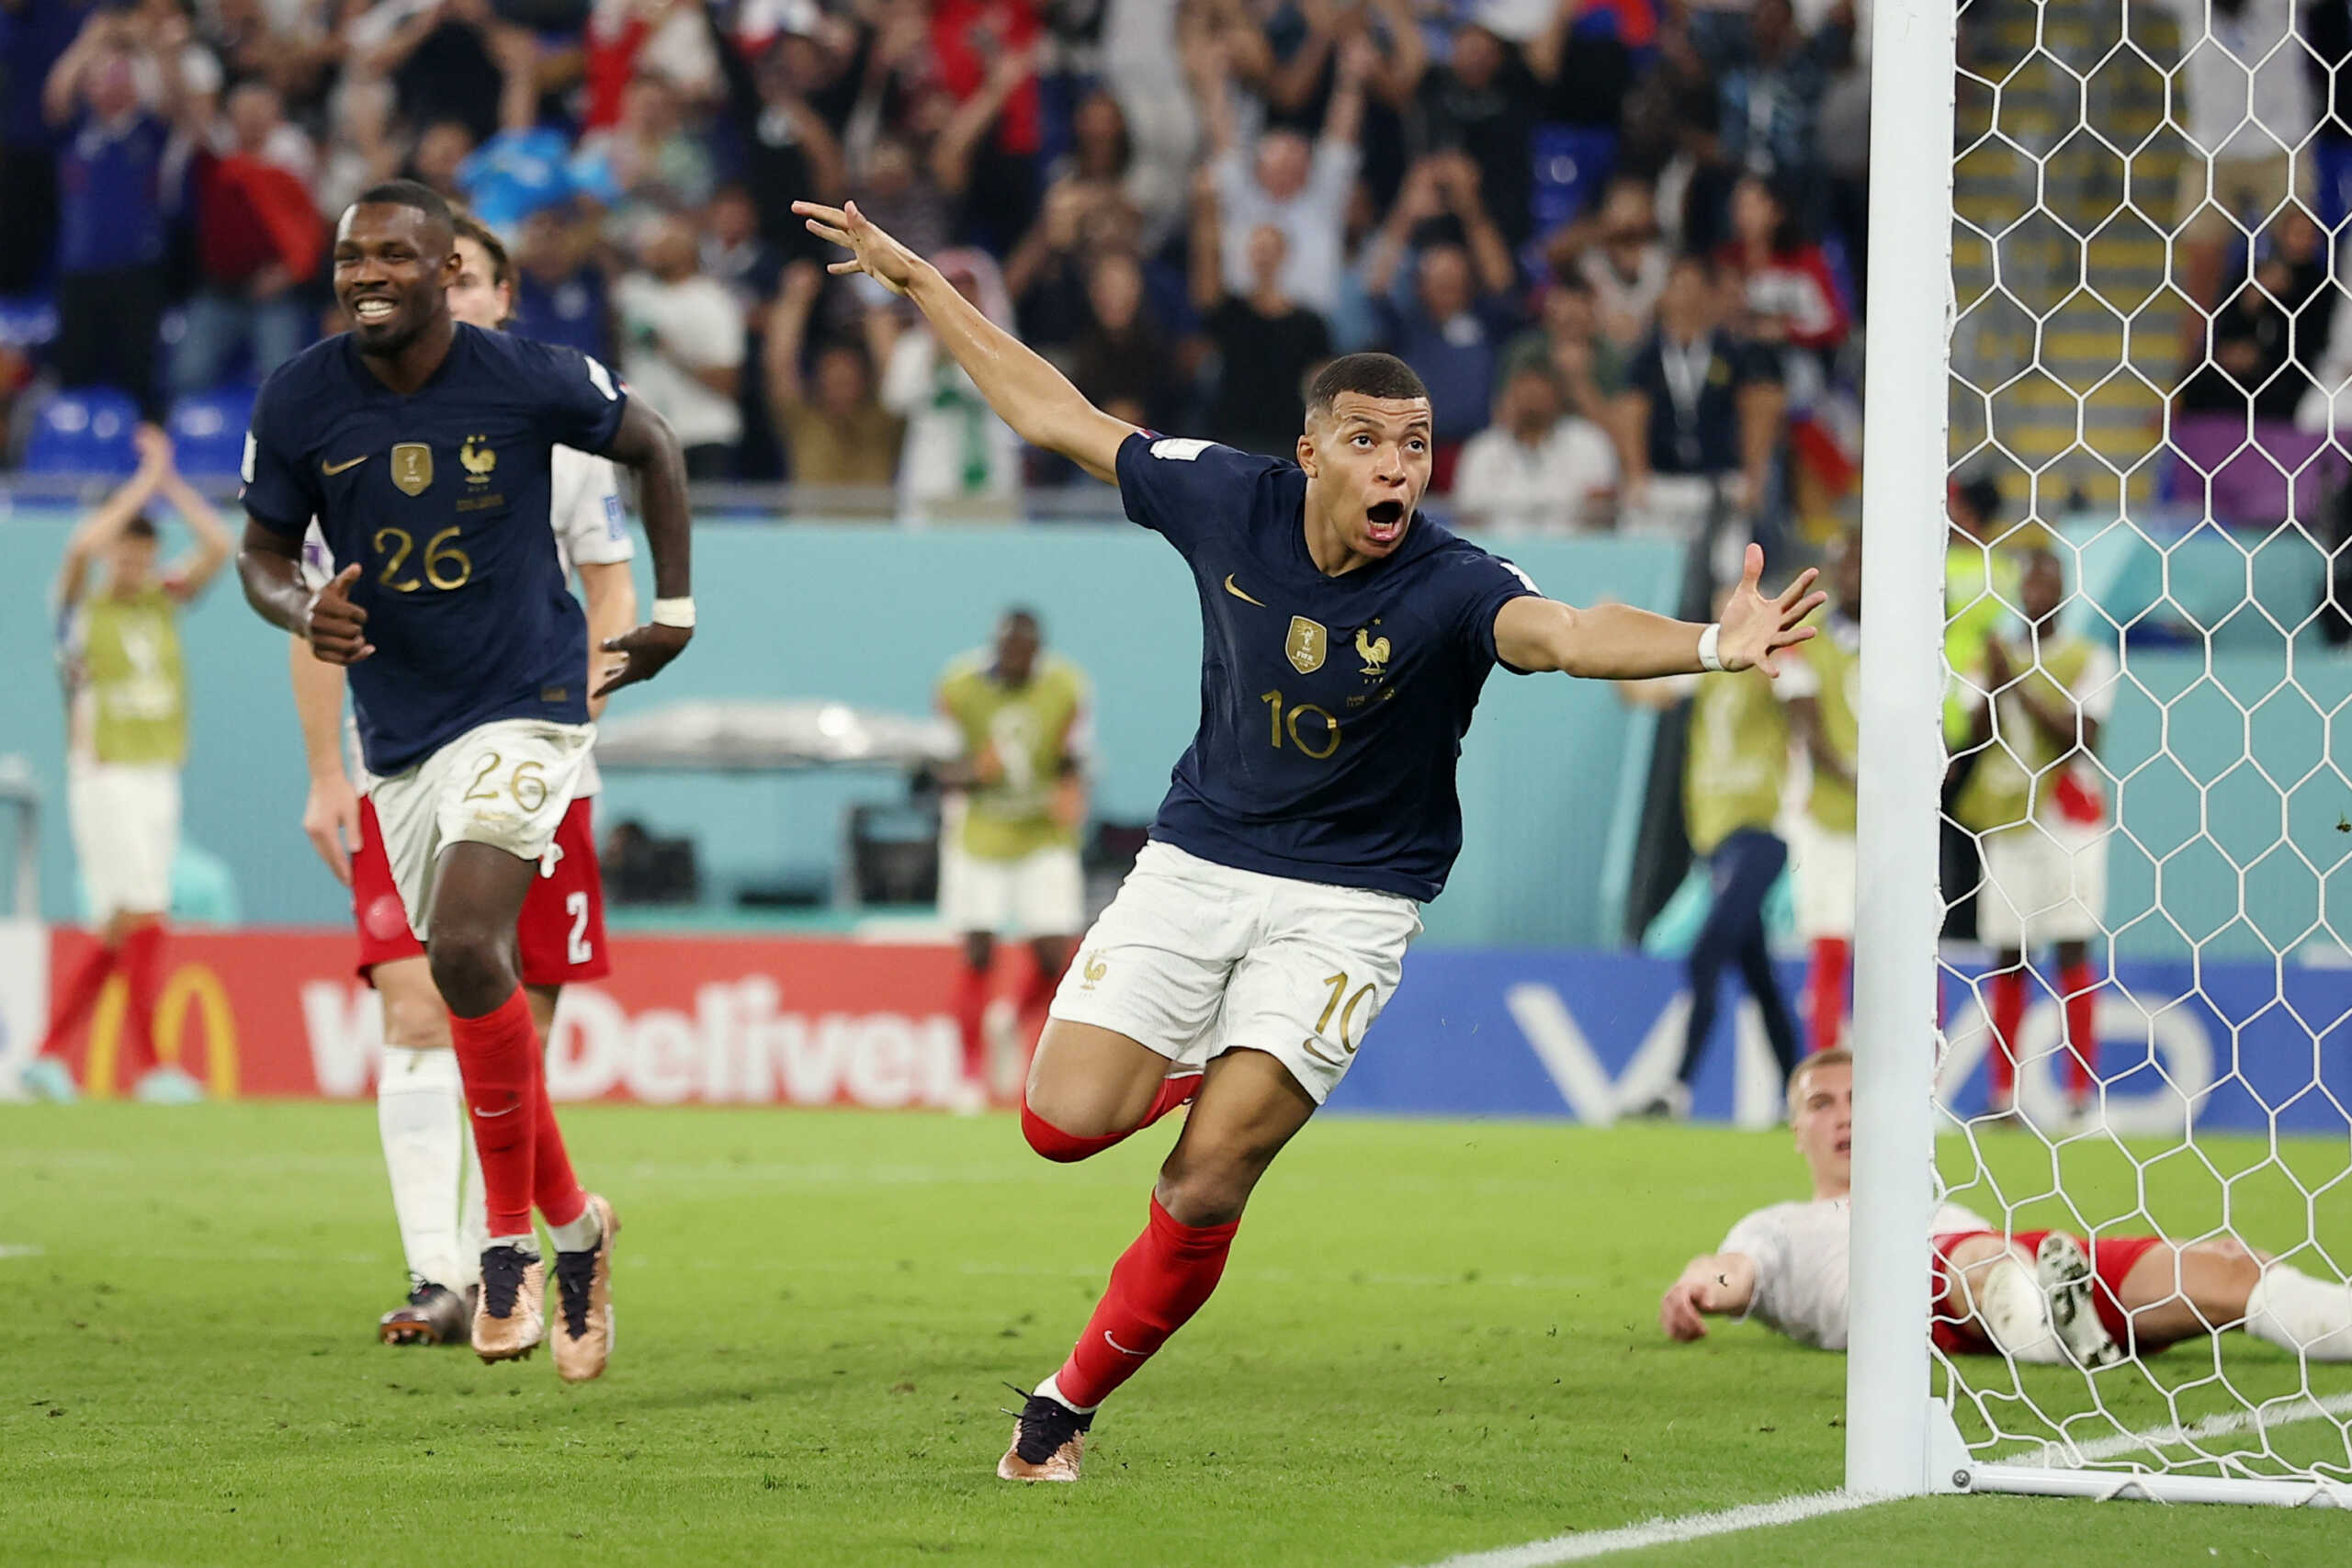 Γαλλία – Δανία 2-1: Ο Κιλιάν Εμπαπέ έφερε τη νίκη και την πρόκριση στον επόμενο γύρο του Μουντιάλ 2022